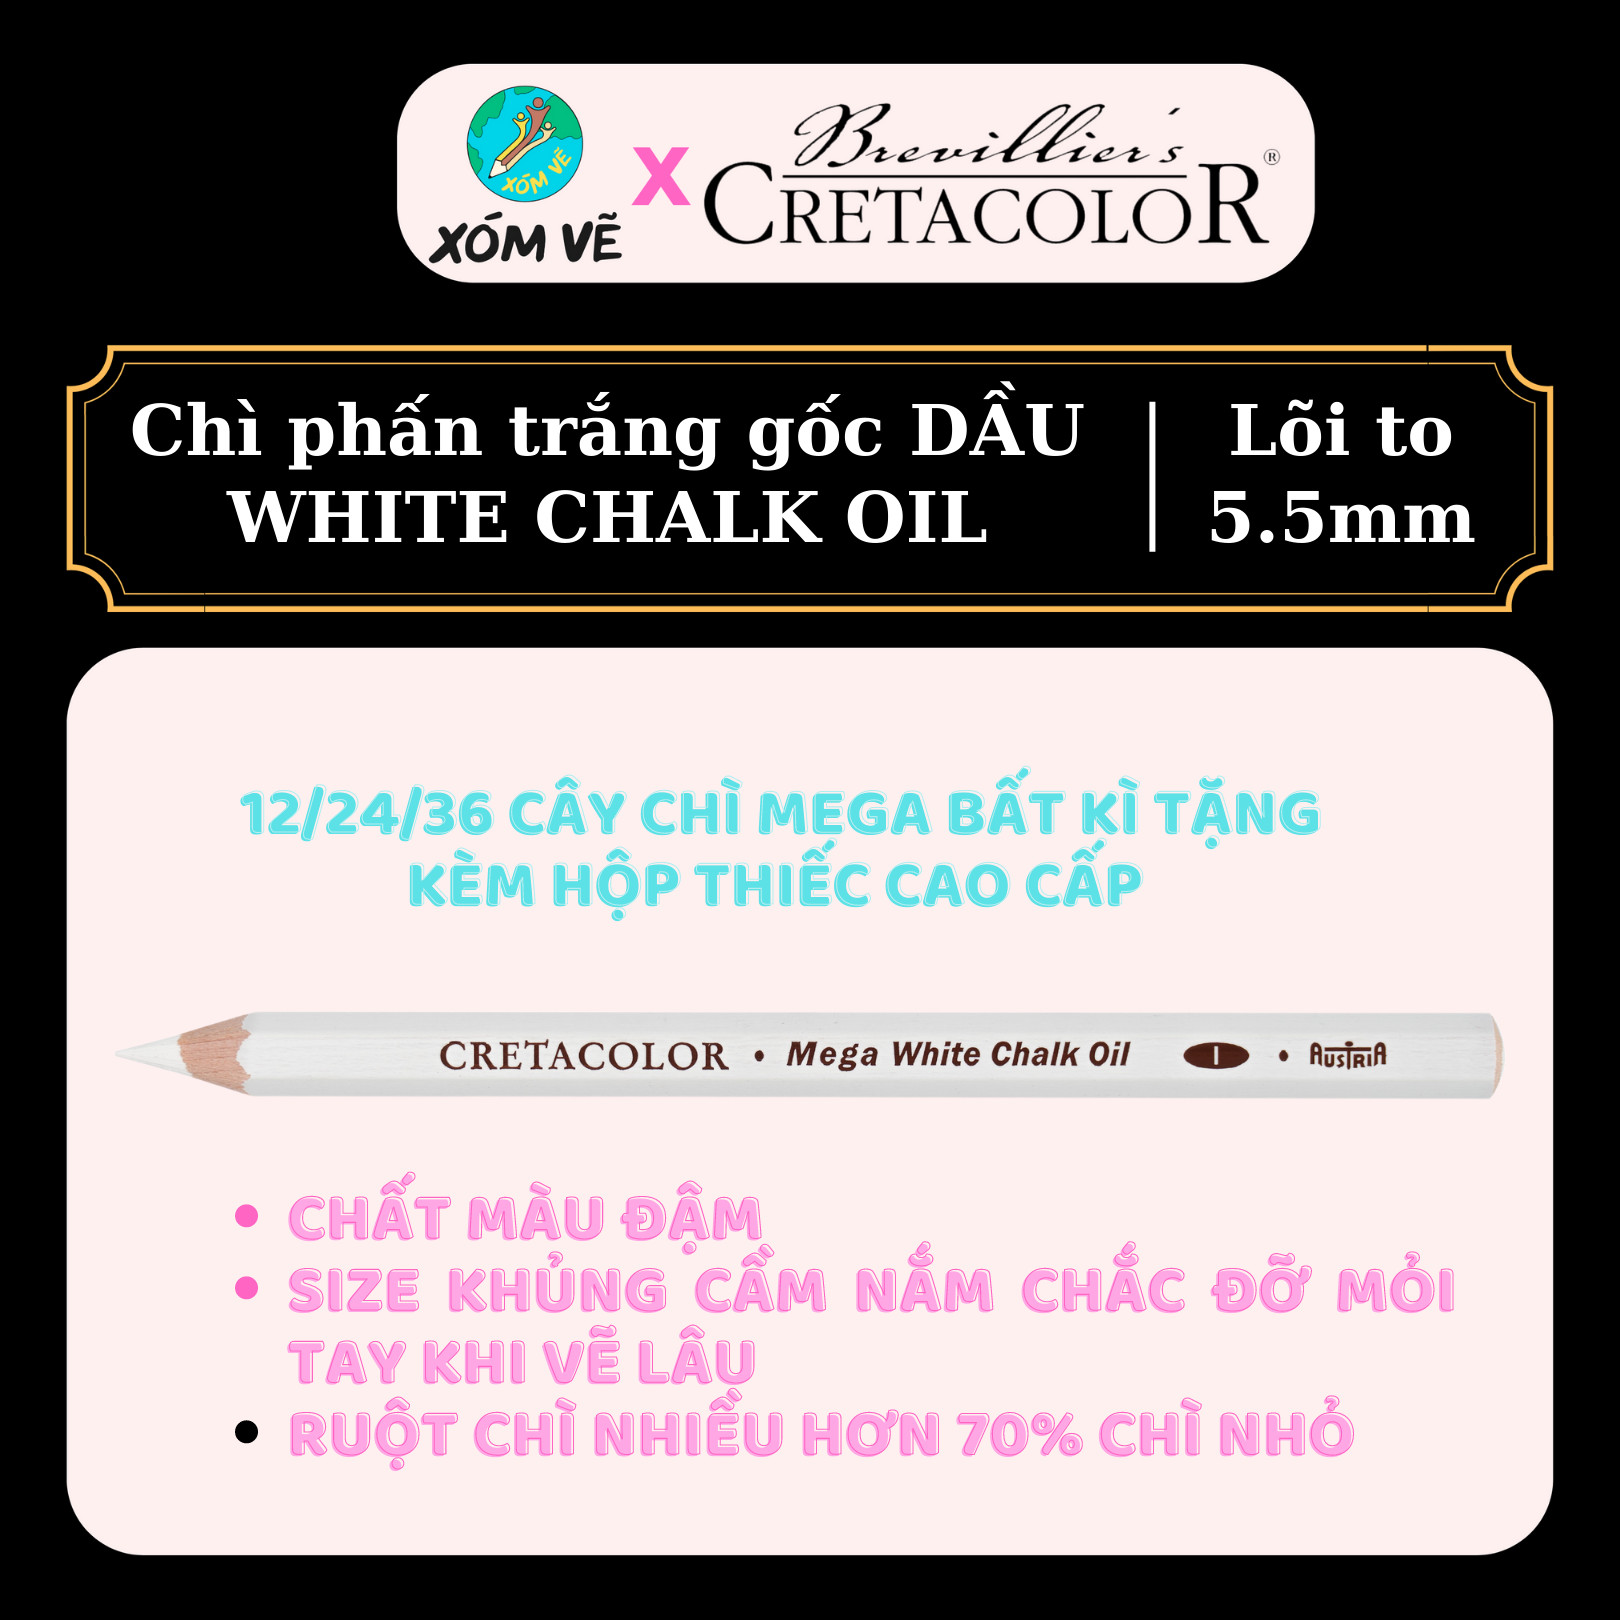 Chì phấn trắng gốc dầu lõi to 5.5mm White chalk oil CRETACOLOR 461 68